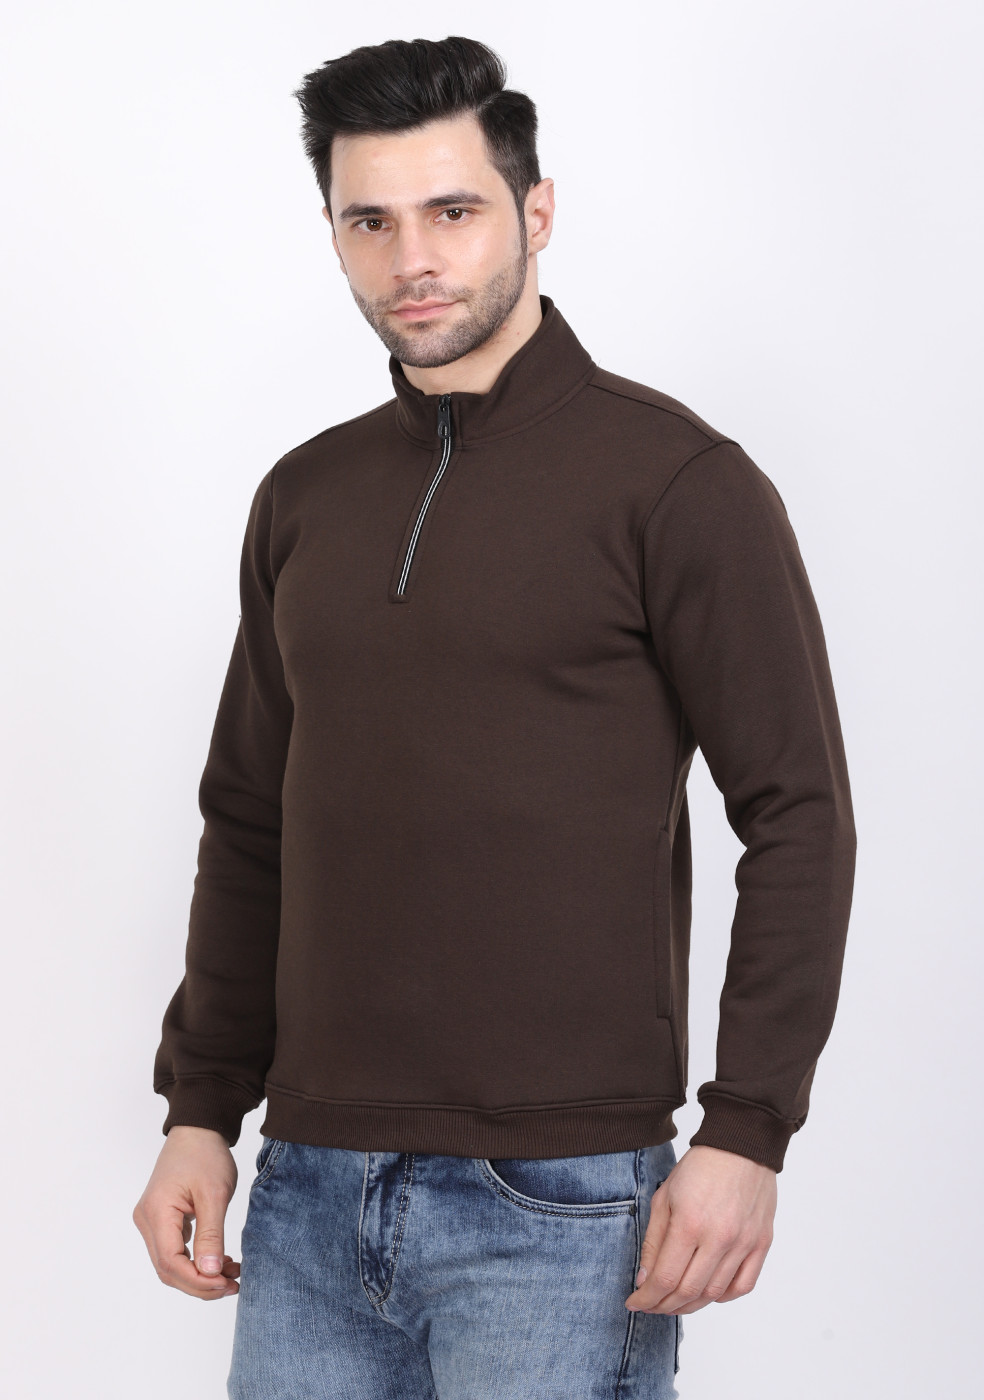 HUKH Half Zip Long Sleeve Dark Olive Sweatshirt For Men